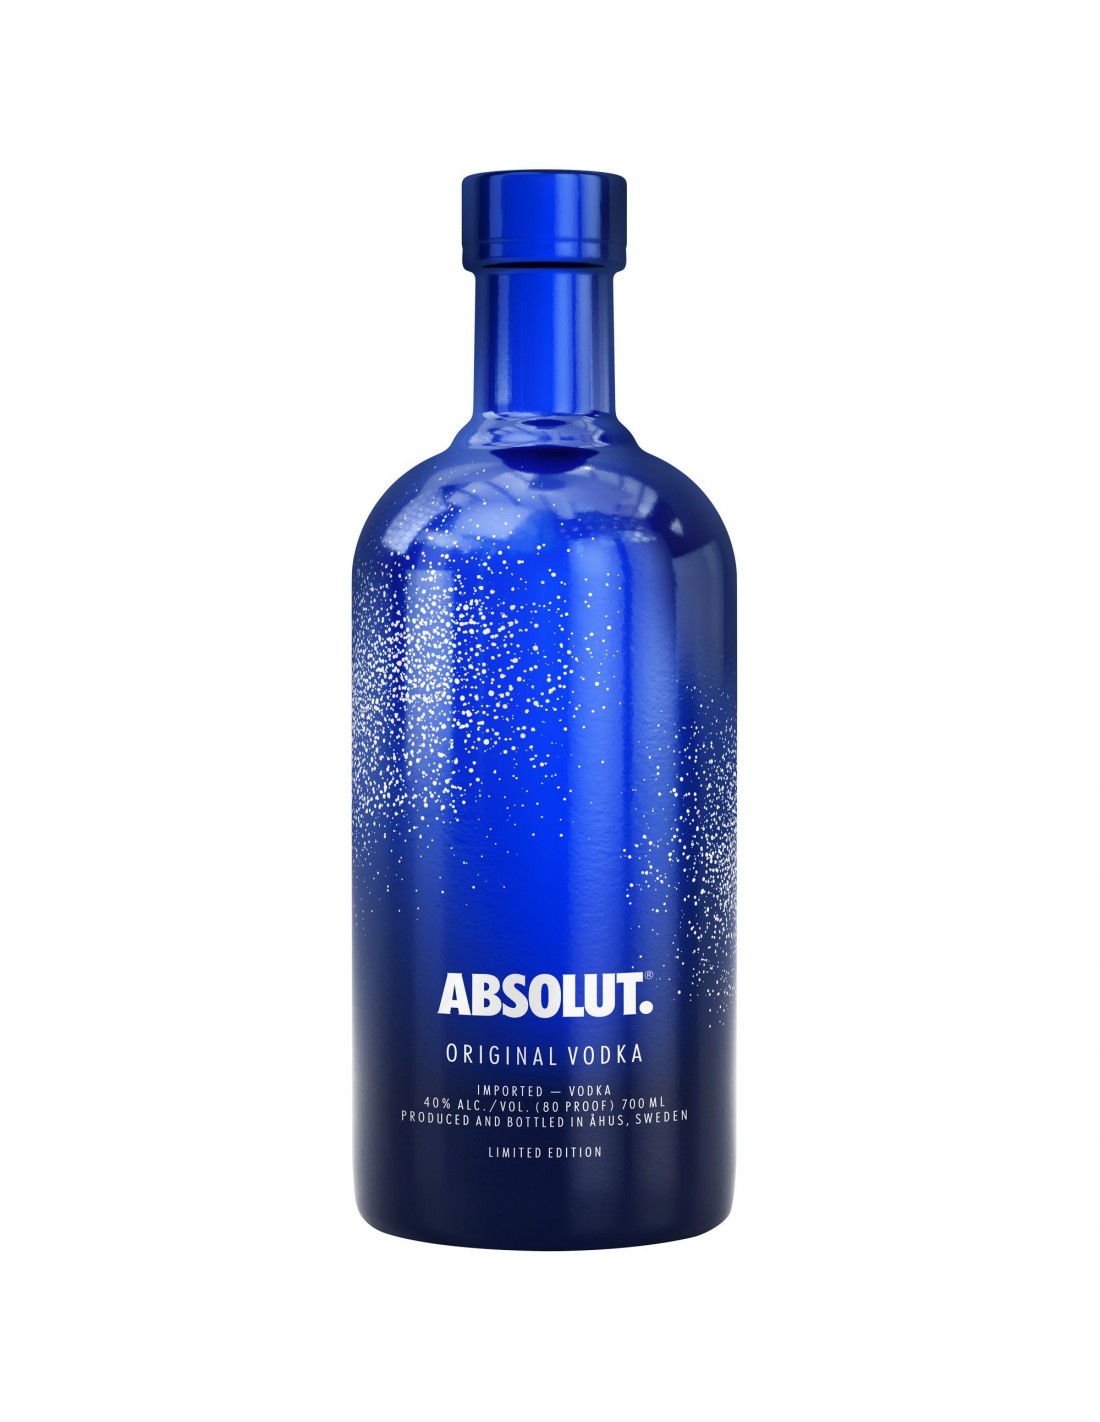 Vodca Absolut Uncover, 40% alc., 0.7L, Suedia alcooldiscount.ro